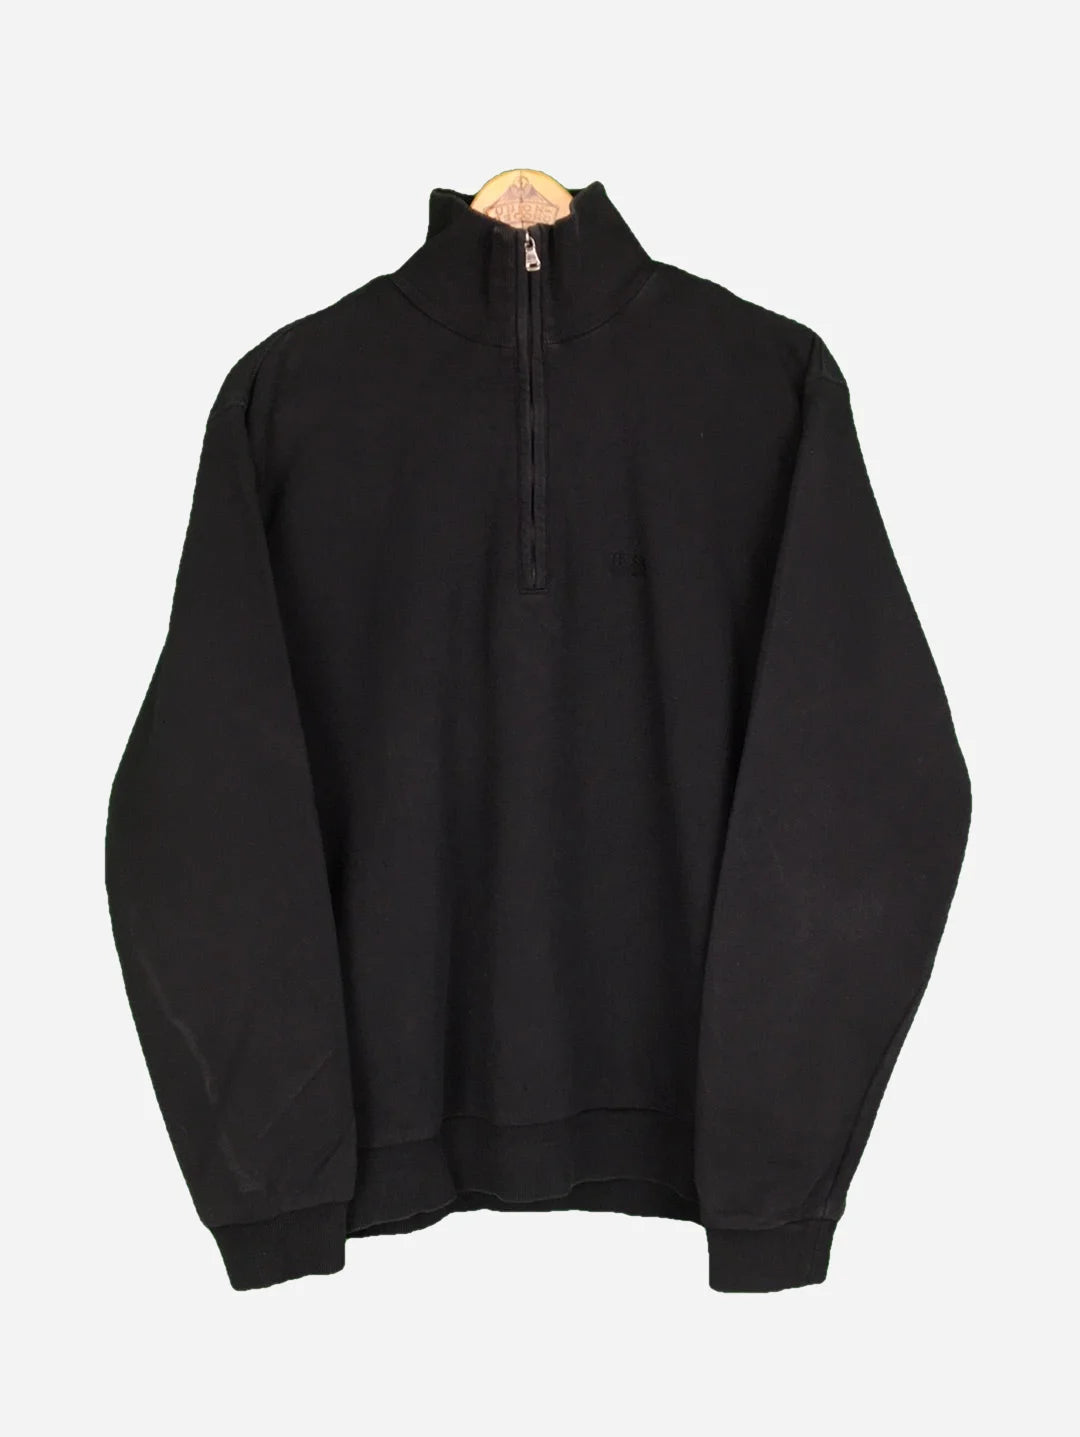 Hugo Boss Zip Sweater (M)